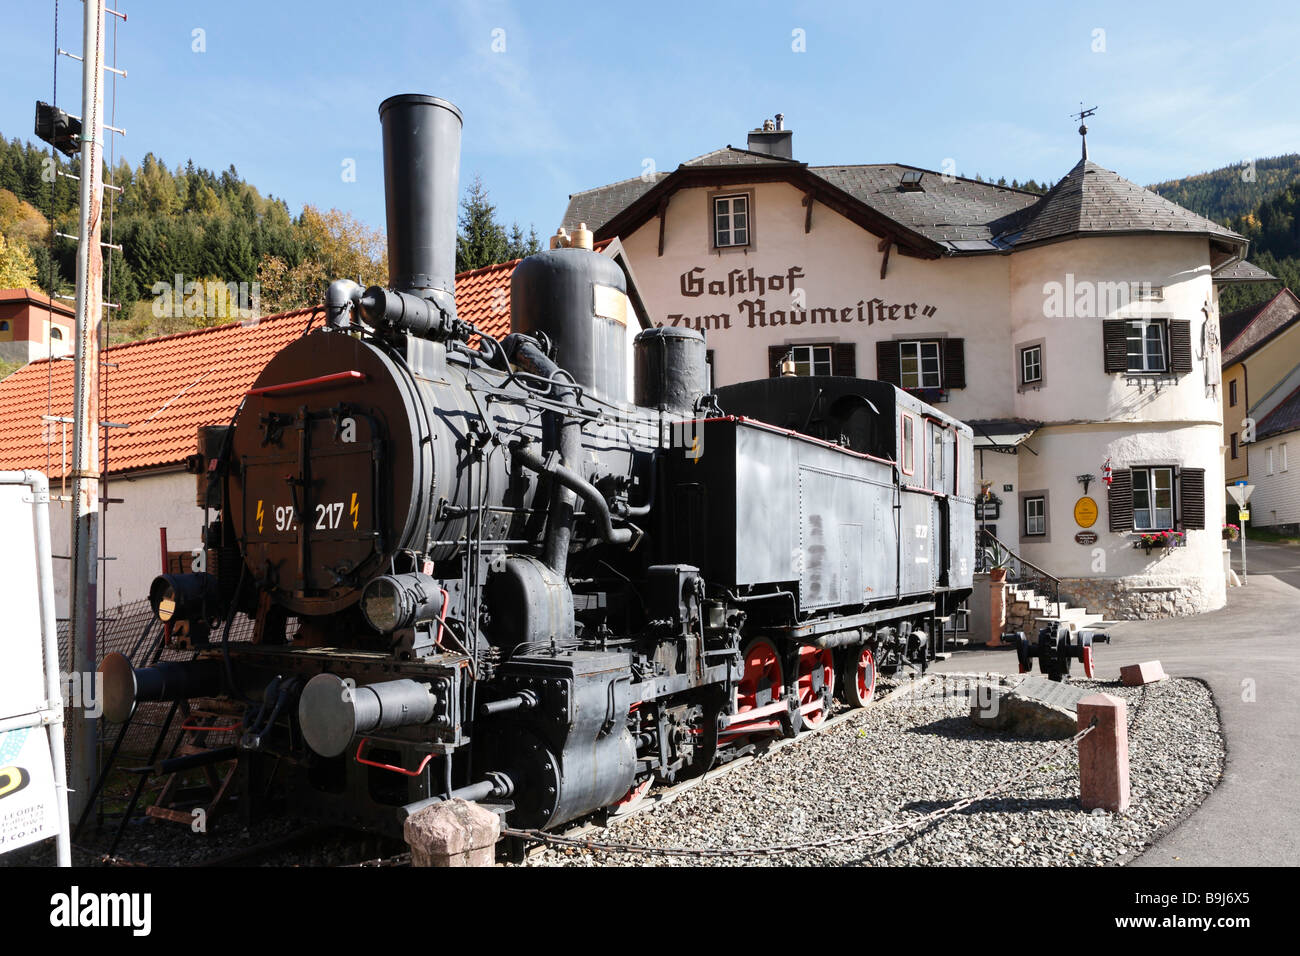 Old steam engine in Vordernberg, steirische Eisenstrasse Scenic Route, Styria, Austria, Europe Stock Photo